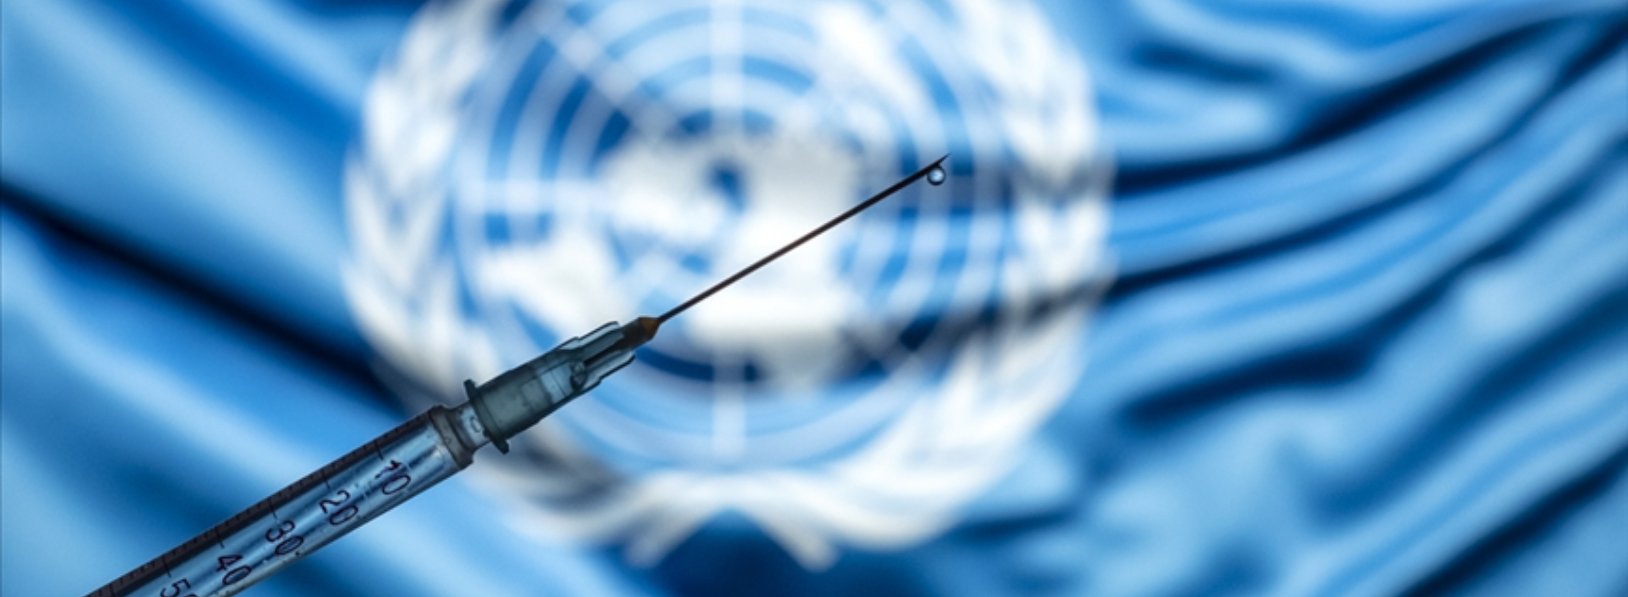 UNICEF 85 ülkeye Covid-19 aşısı tedariki için AstraZeneca ile anlaştı.